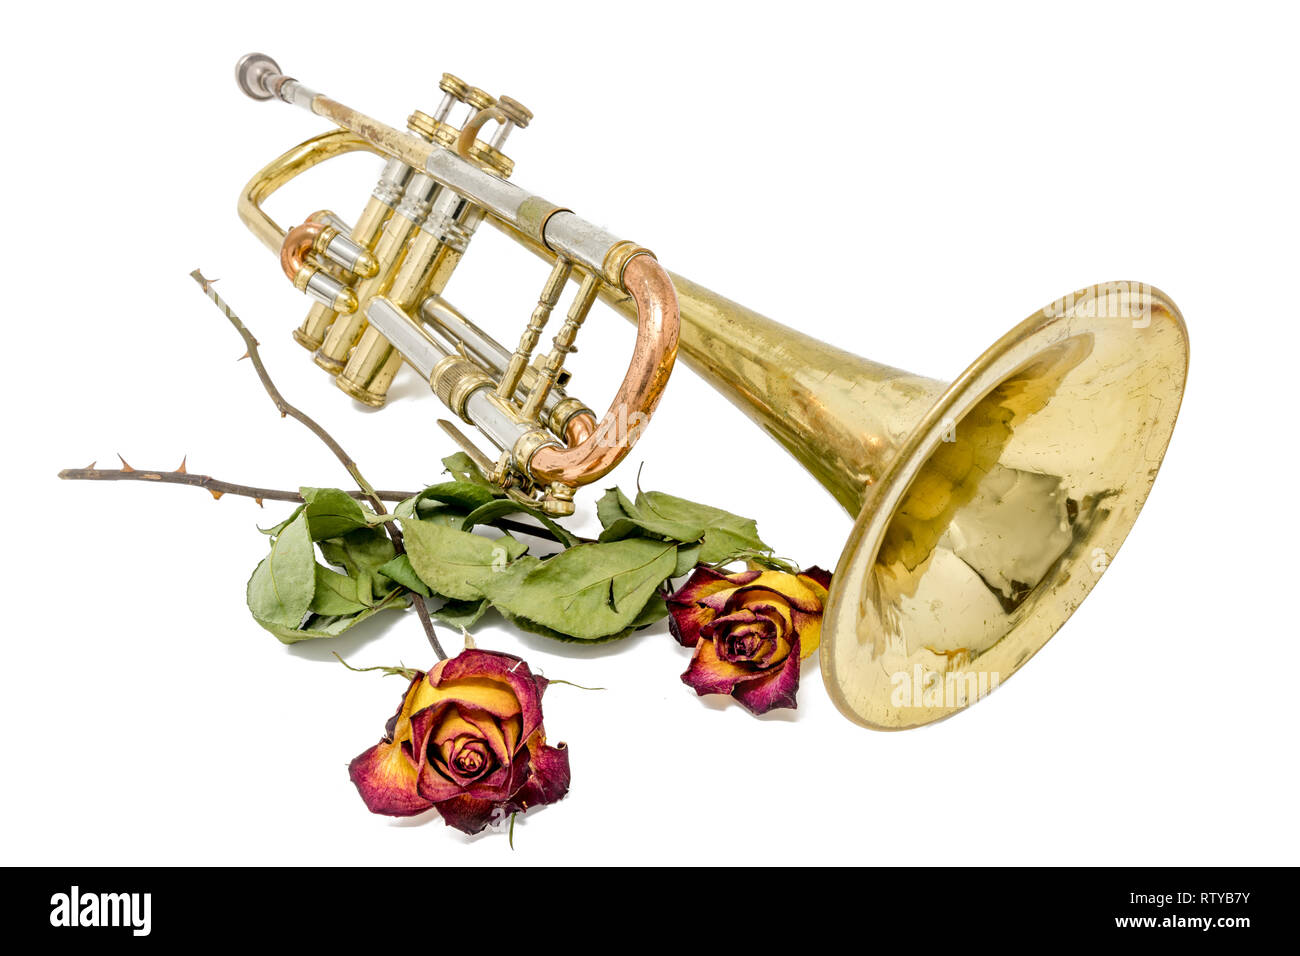 Vieux rouillé or trompette avec séchés roses isolated on white Banque D'Images